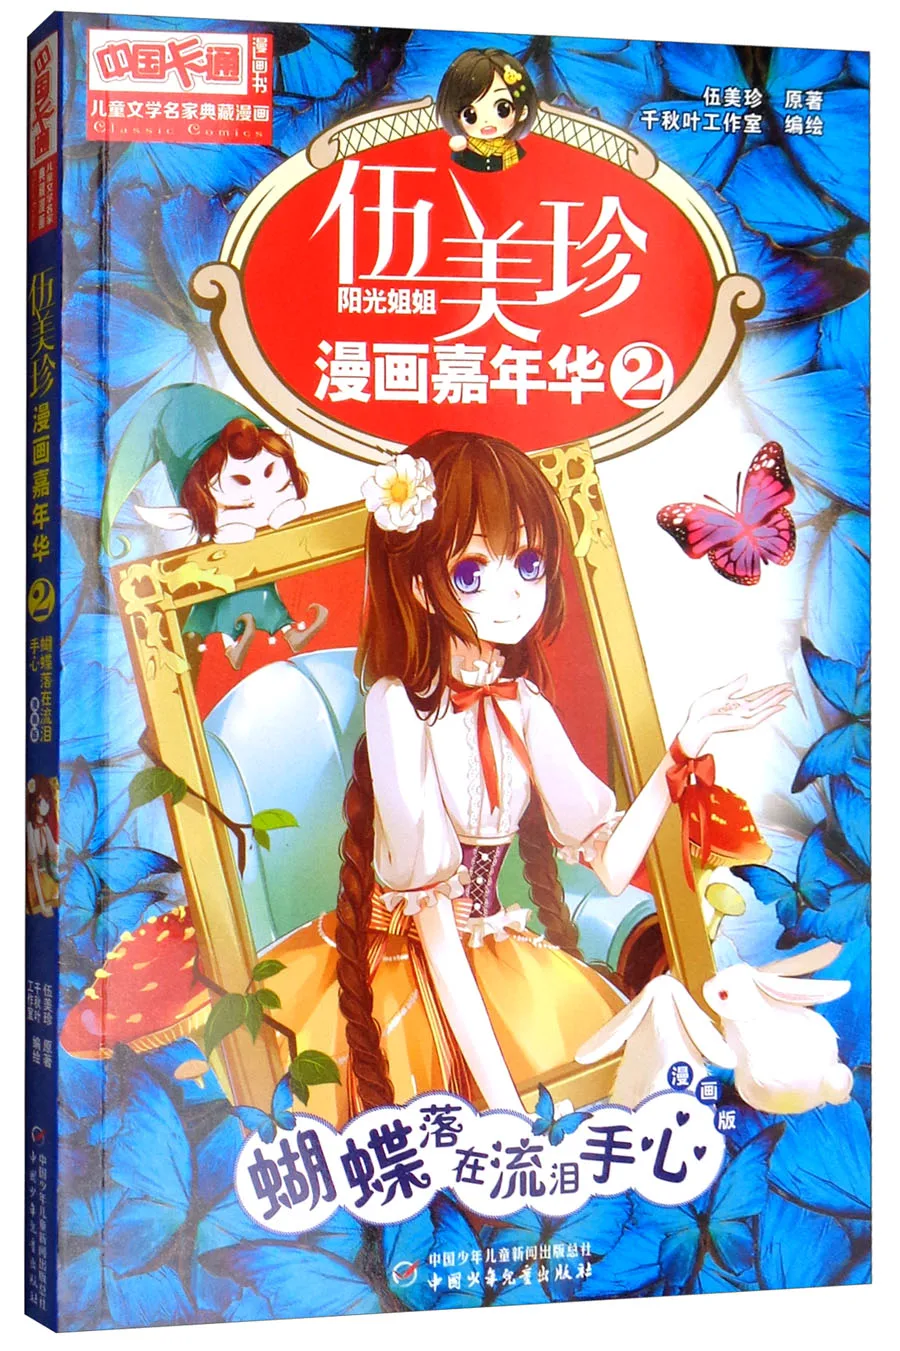 

Манга книга комиксов-Wu Meizhen комиксов карнавальный: 2 бабочки ложатся на ладонях слезы картина в стиле комикса комплект из двух частей книга